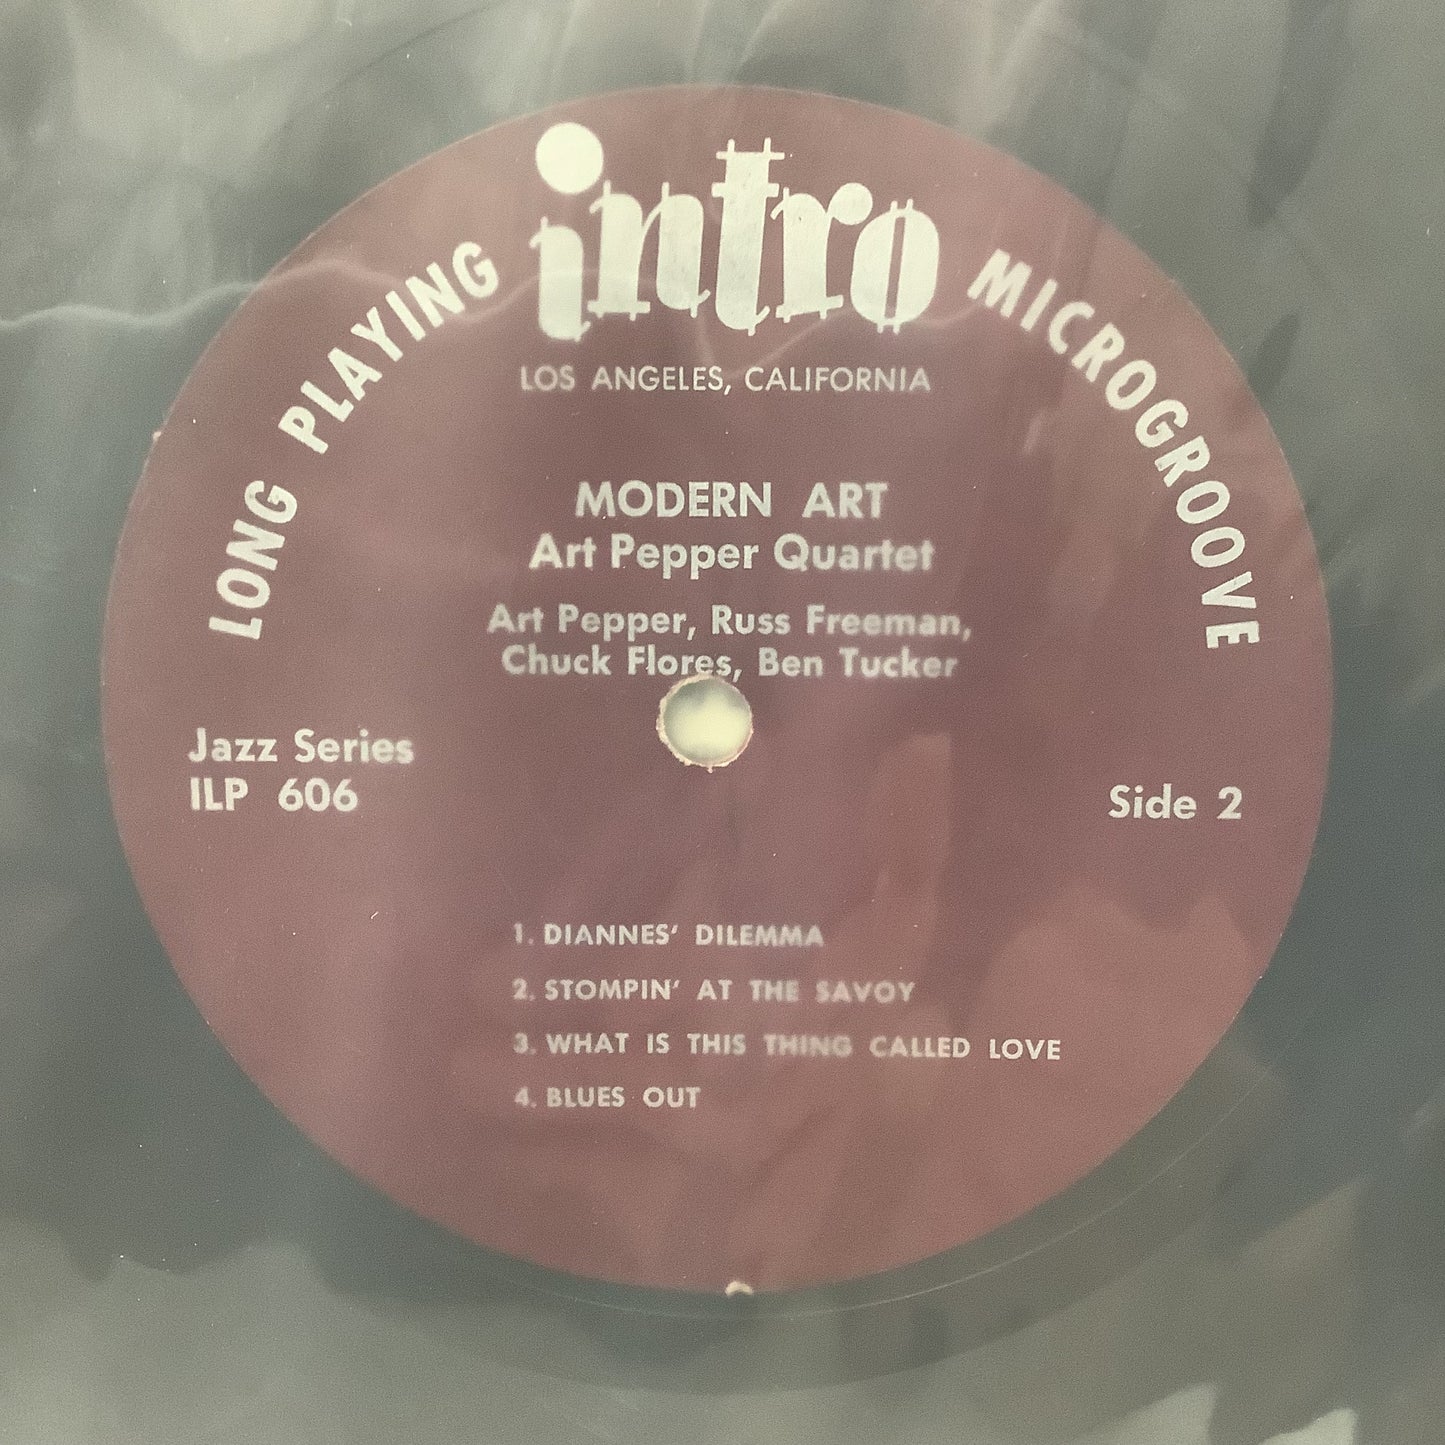 Art Pepper - Arte moderno - LP